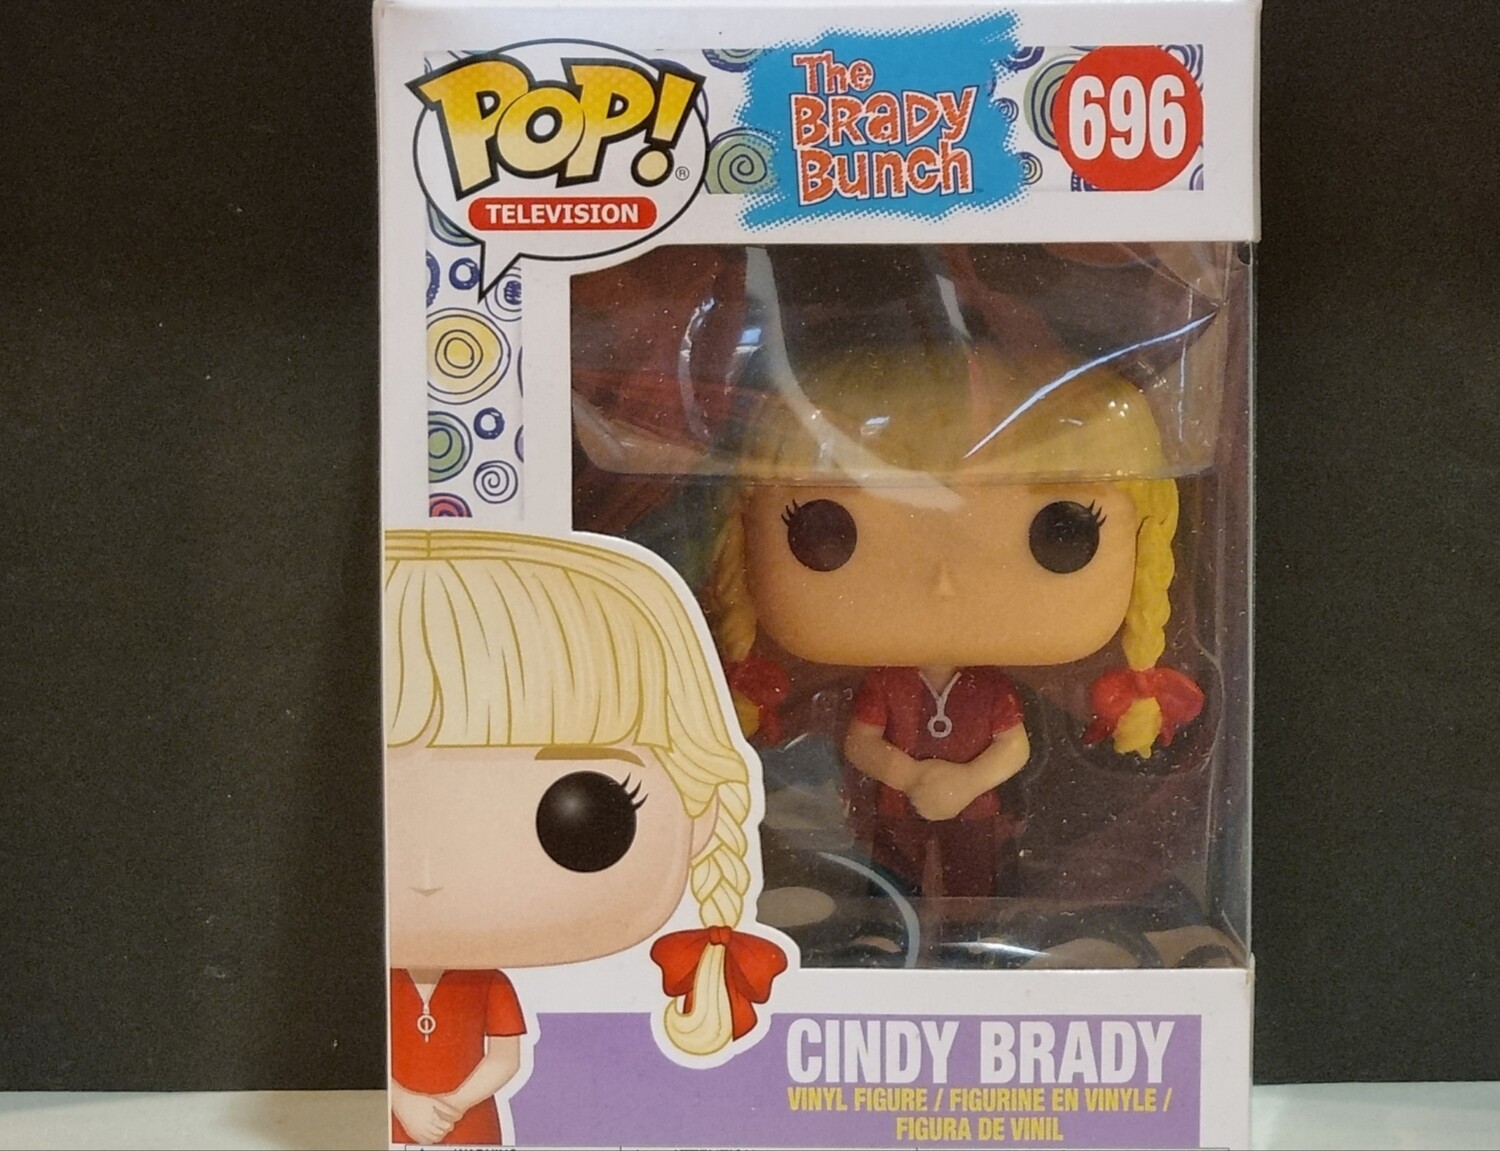 Funko Pop! Television #696 Cindy Brady, The Brady Bunch